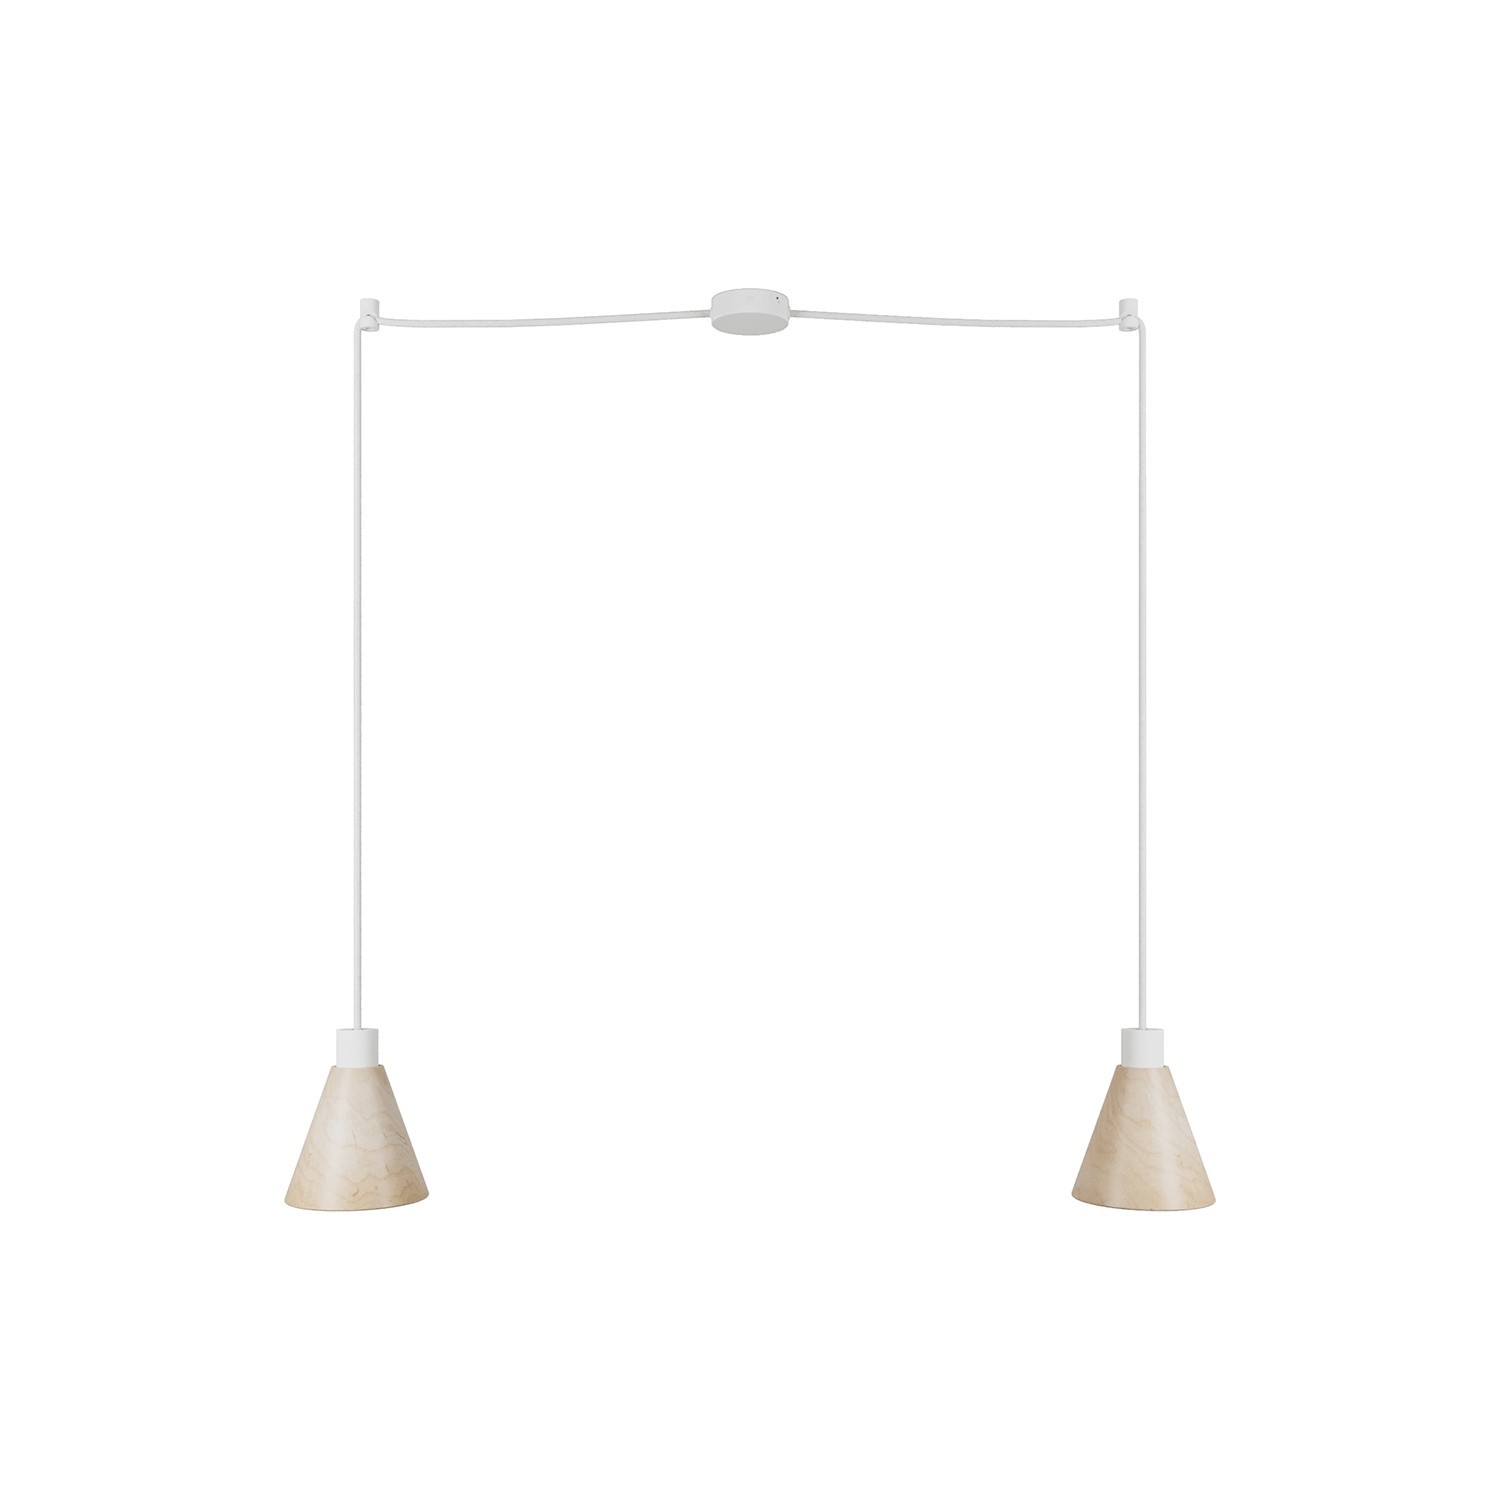 Dvojno viseče svetilo z lesenima senčiloma v obliki stožca